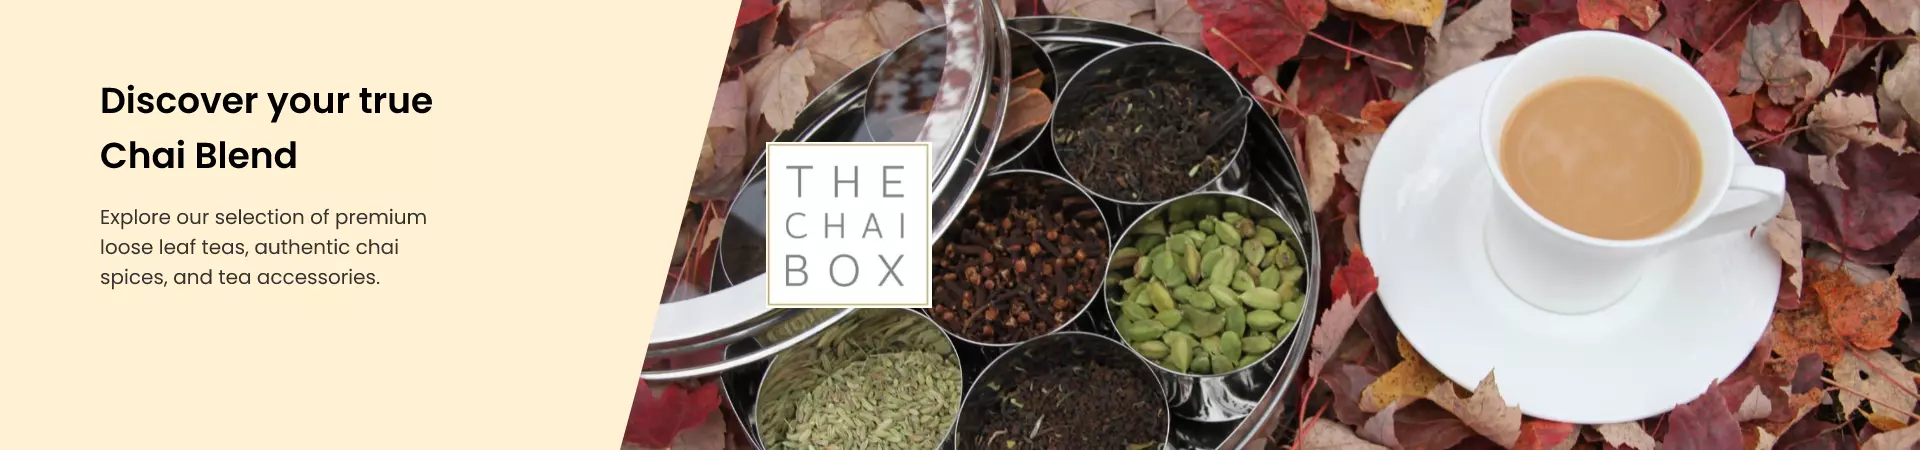 Chai Box shop